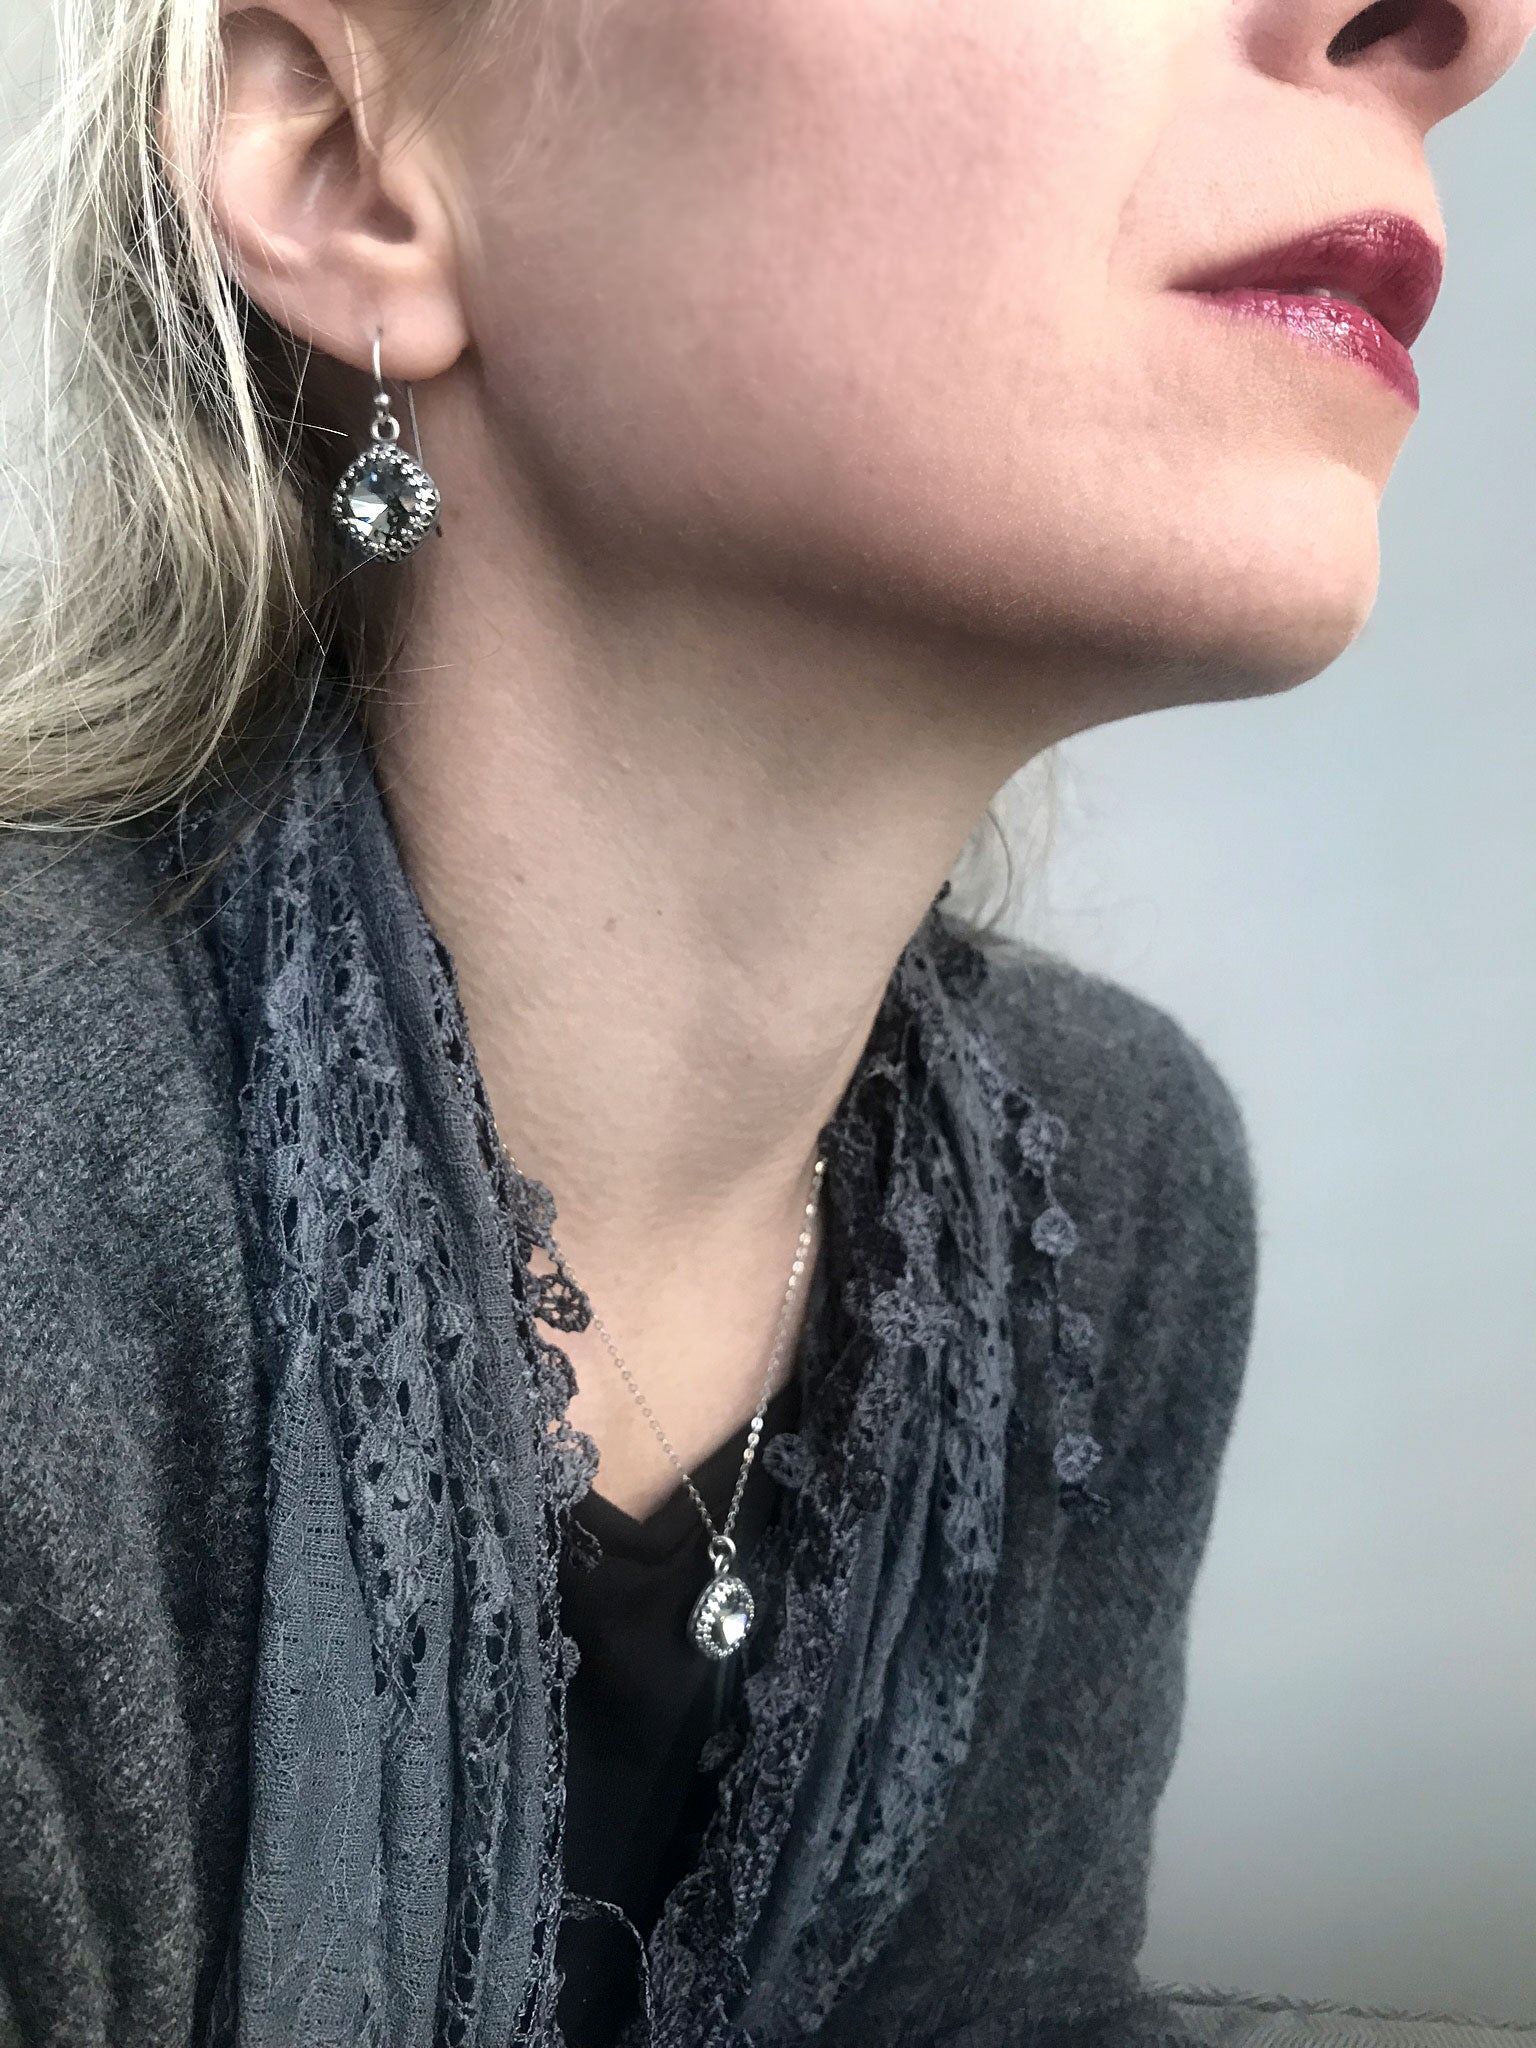 ETERNITY - Black Diamond Crystal Earrings in Vintage Style Crown Bezels